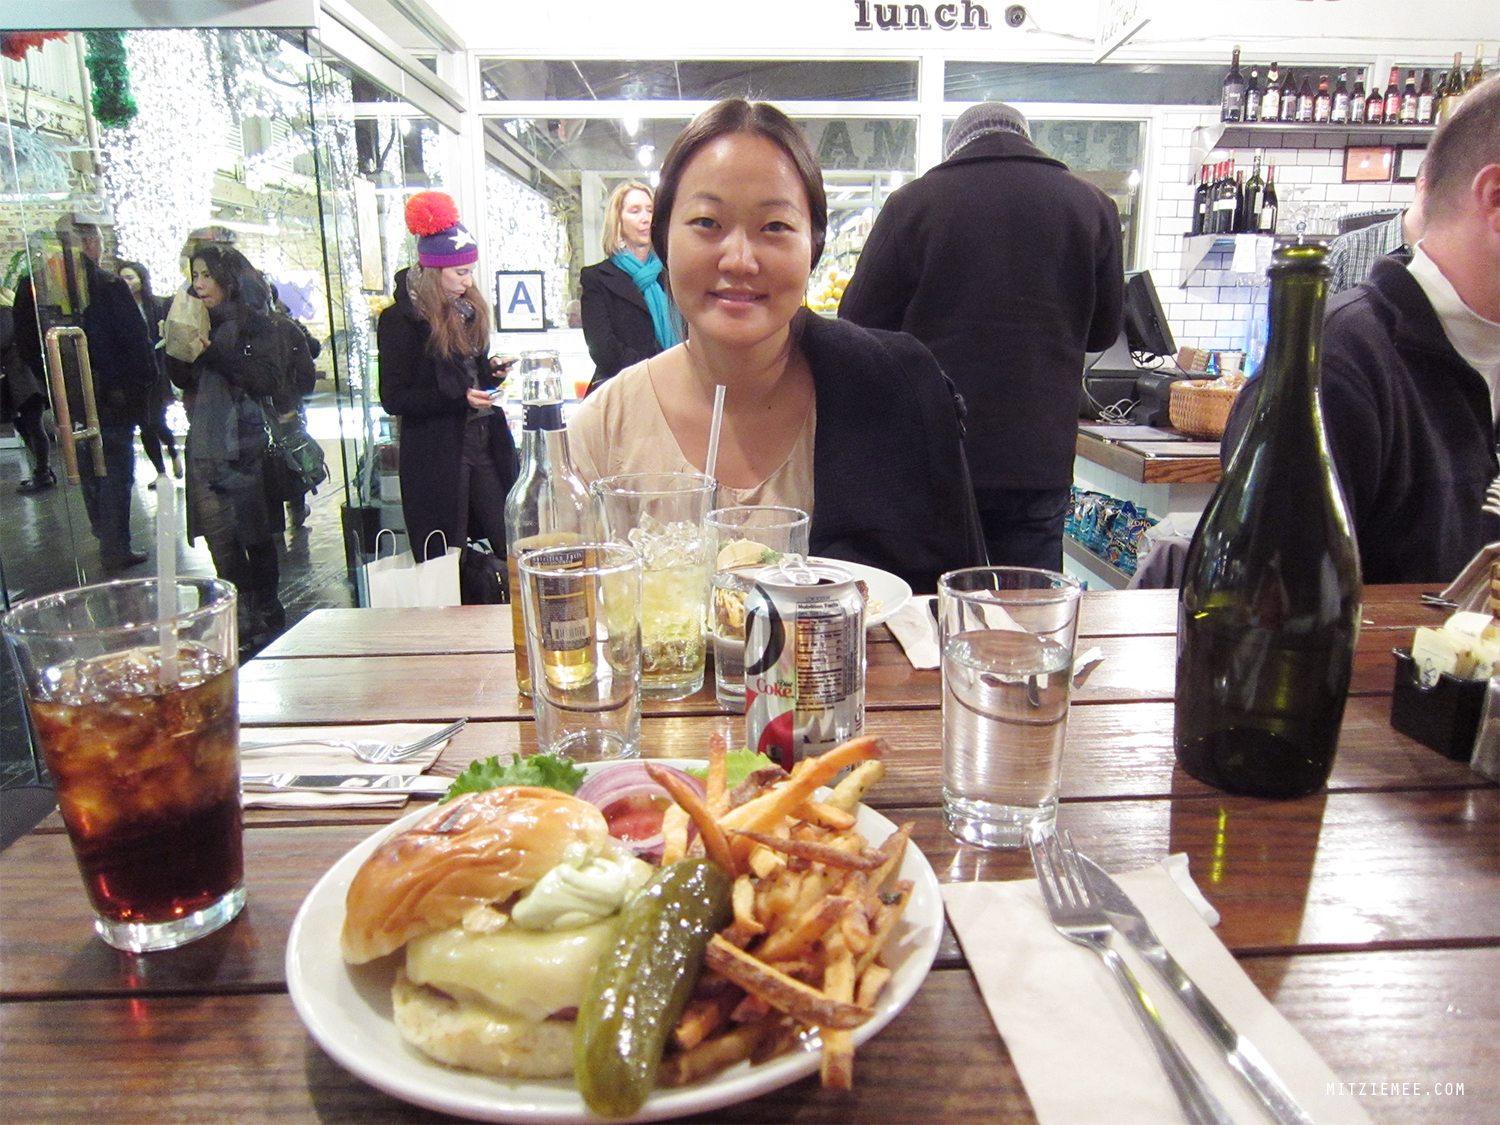 Friedman's Lunch, Chelsea Market, New York